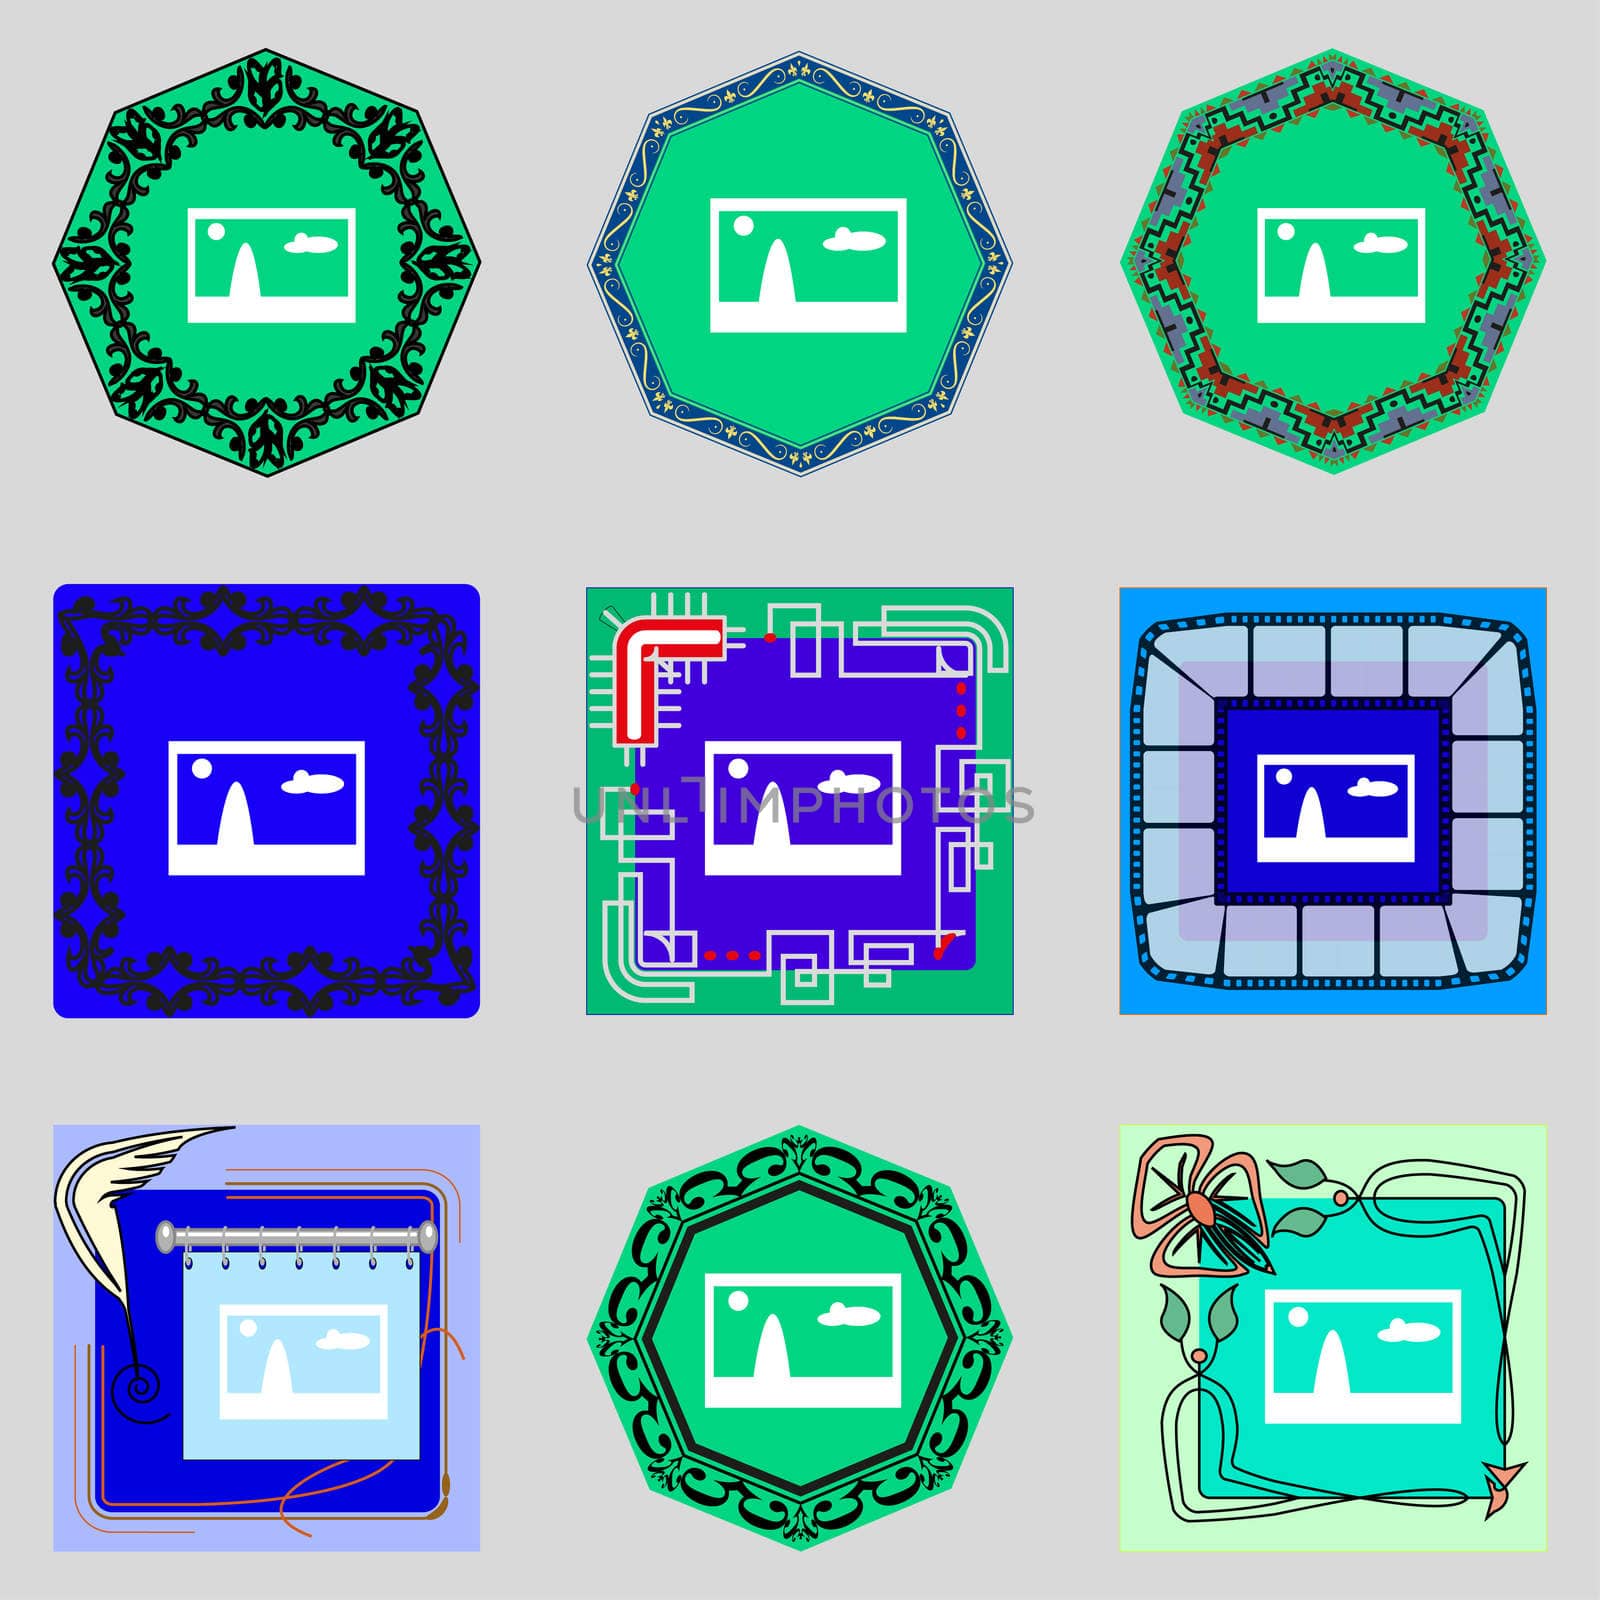 File JPG sign icon. Download image file symbol. Set colourful buttons. Modern UI website navigation illustration